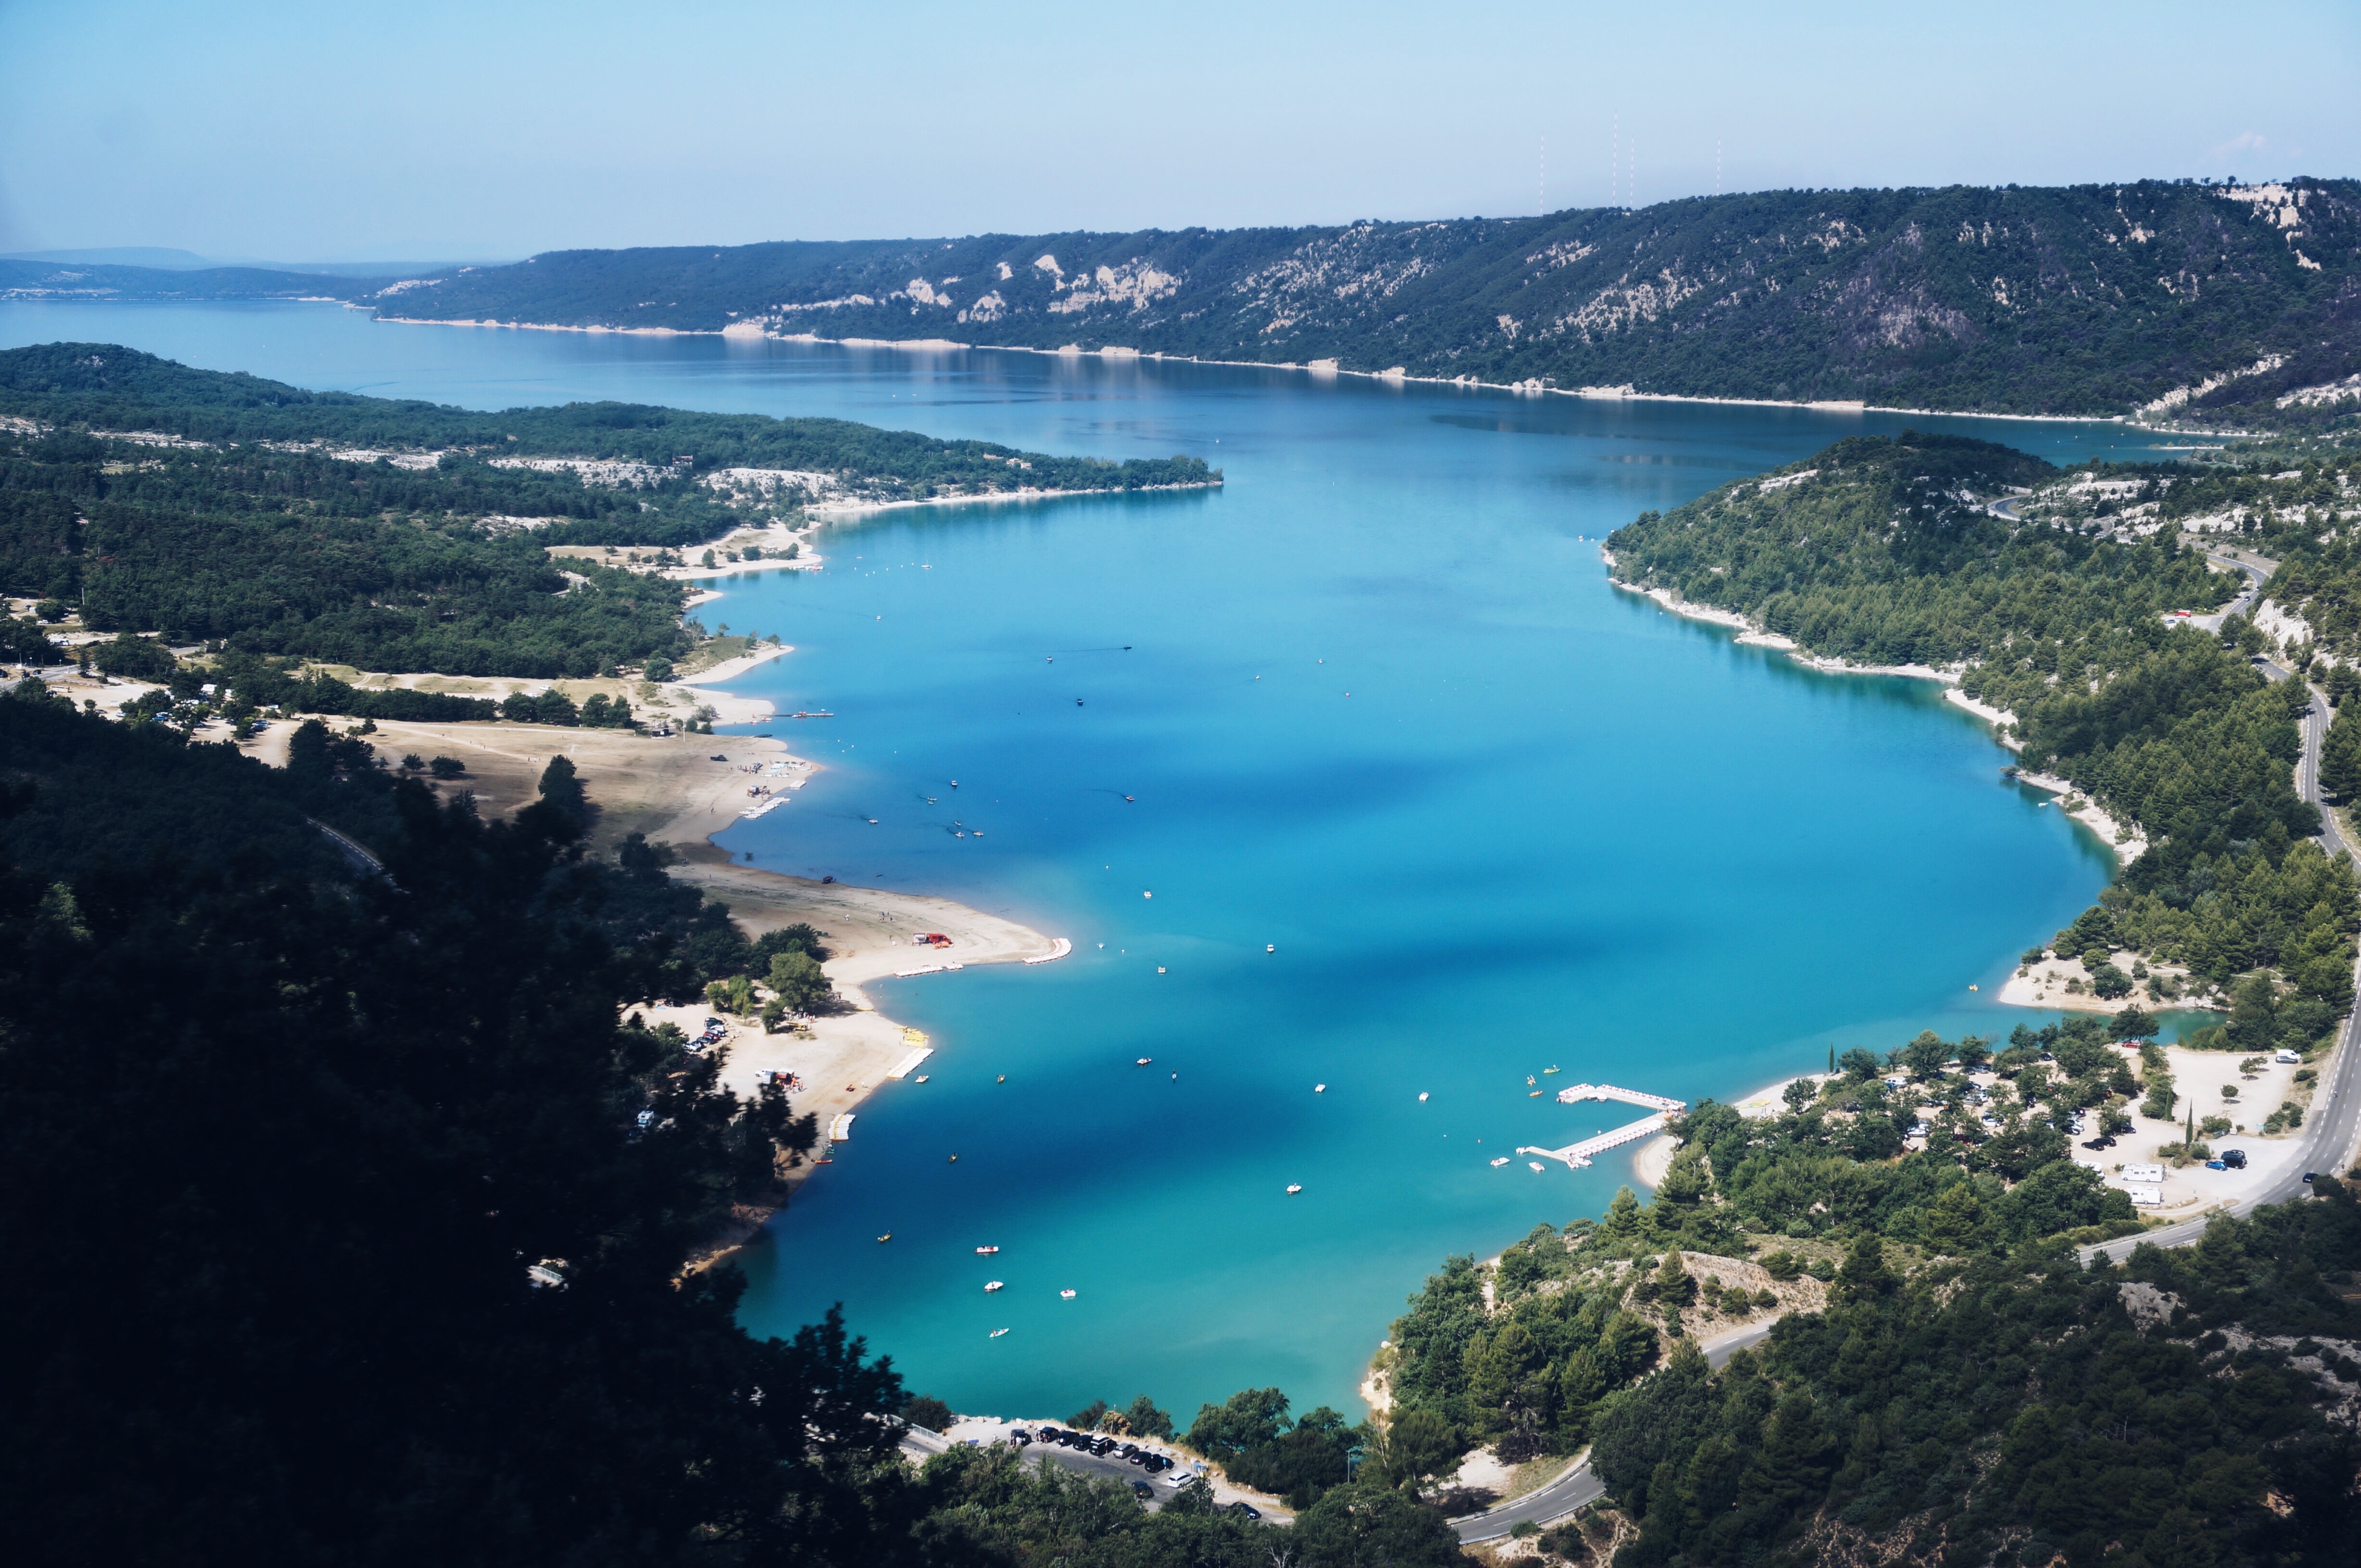 Schlucht von Verdon, Lac de Saint Croix, Frankreich, Sehenswürdigkeiten, Urlaub, Reisen, Traumurlaub